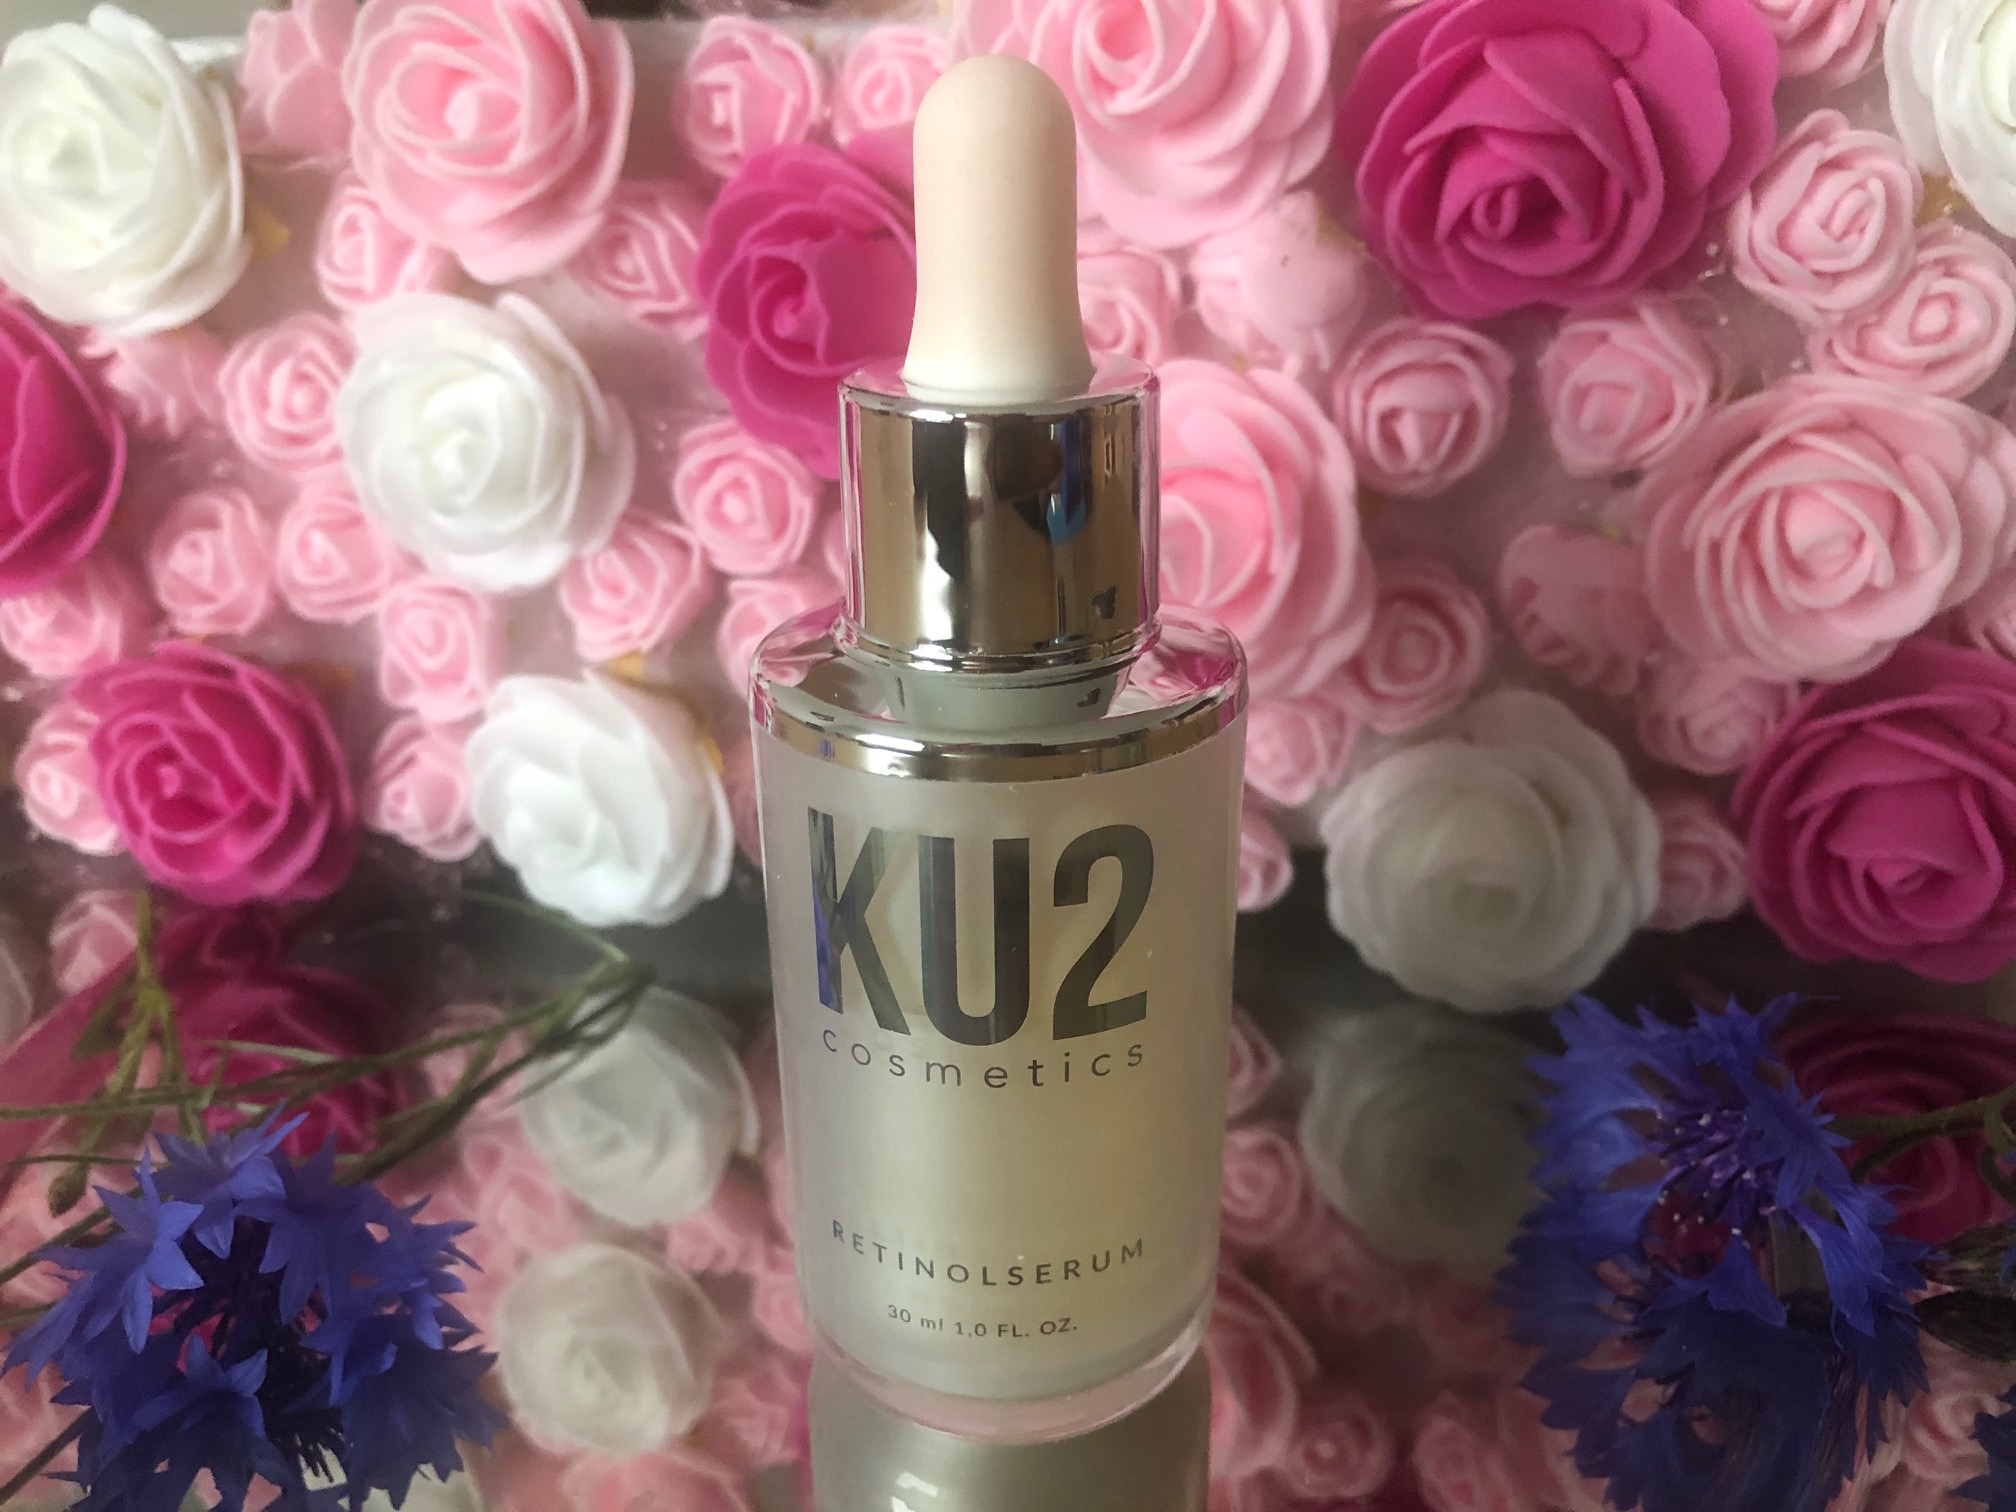 KU2 Cosmetics Retinolserum im Test und Erfahrung (1)